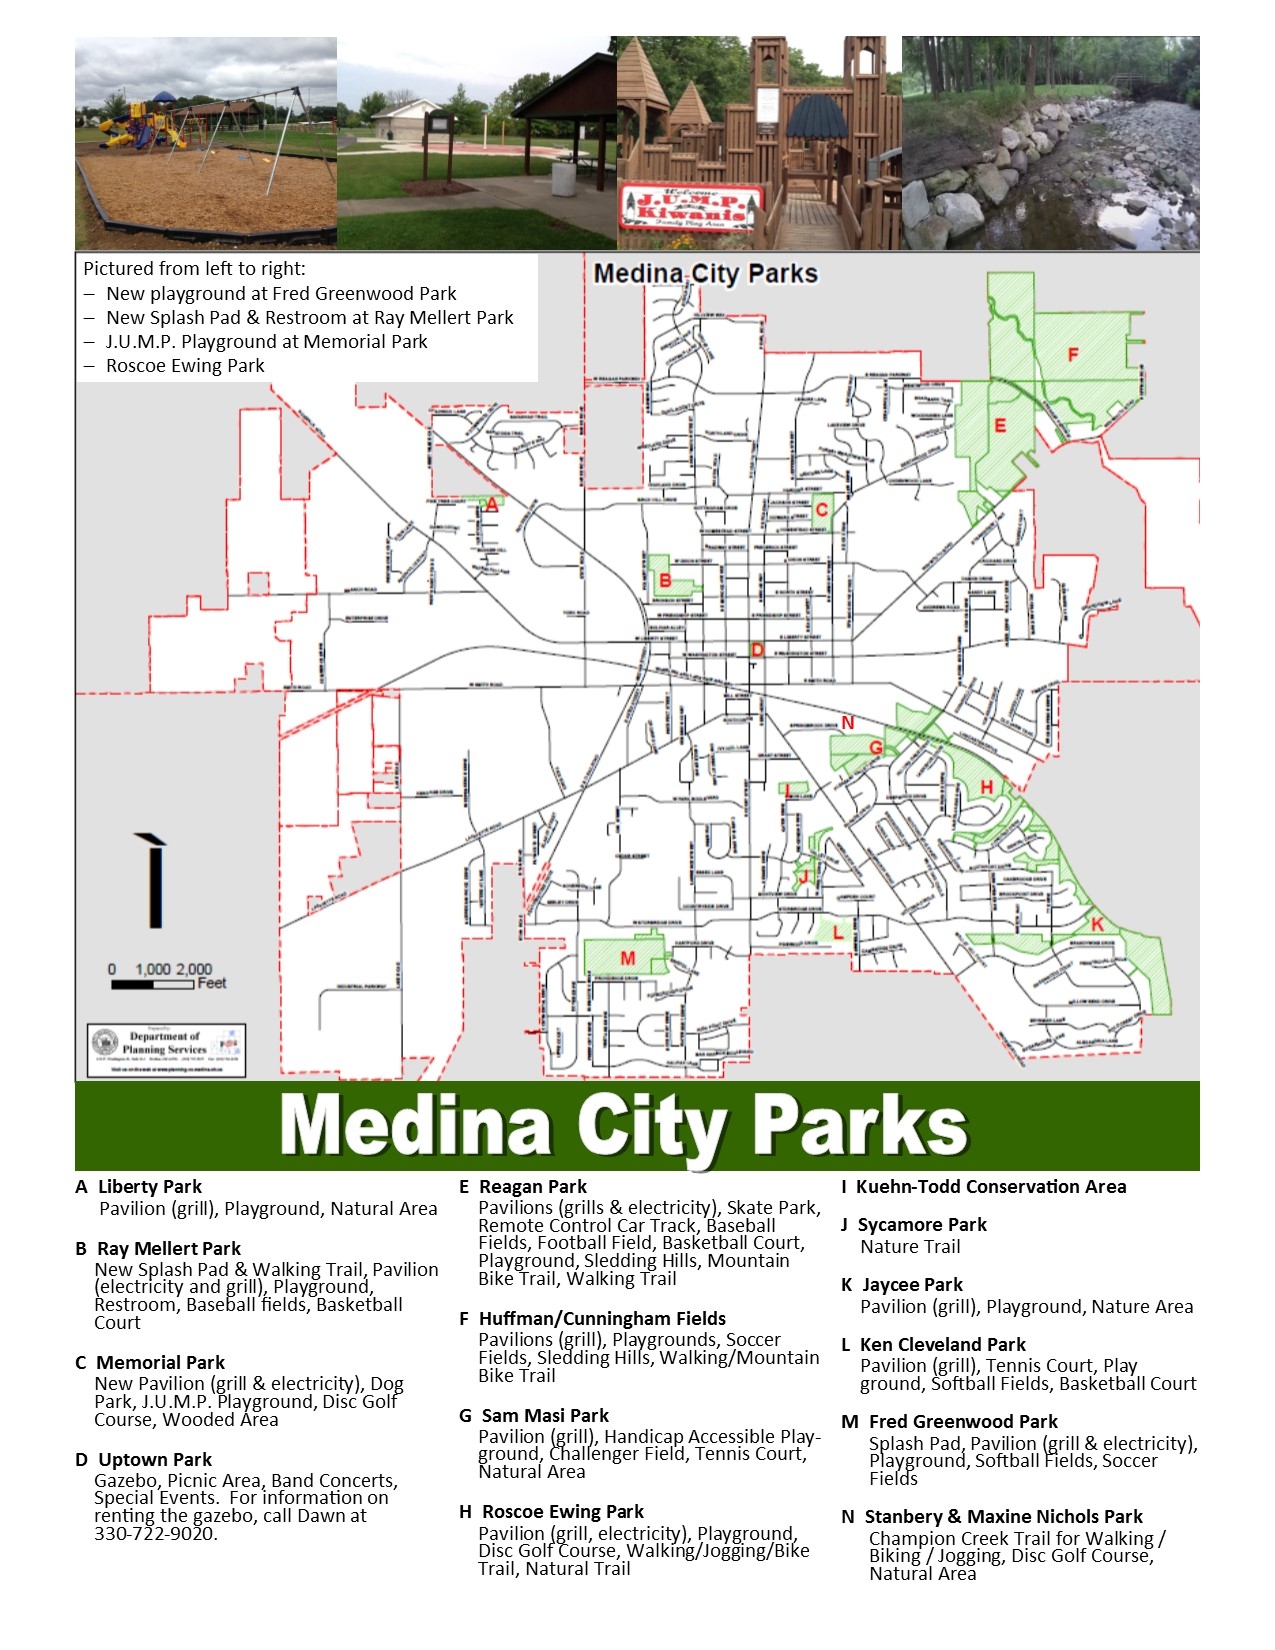 medina-city-parks-map-the-city-of-medina-ohio